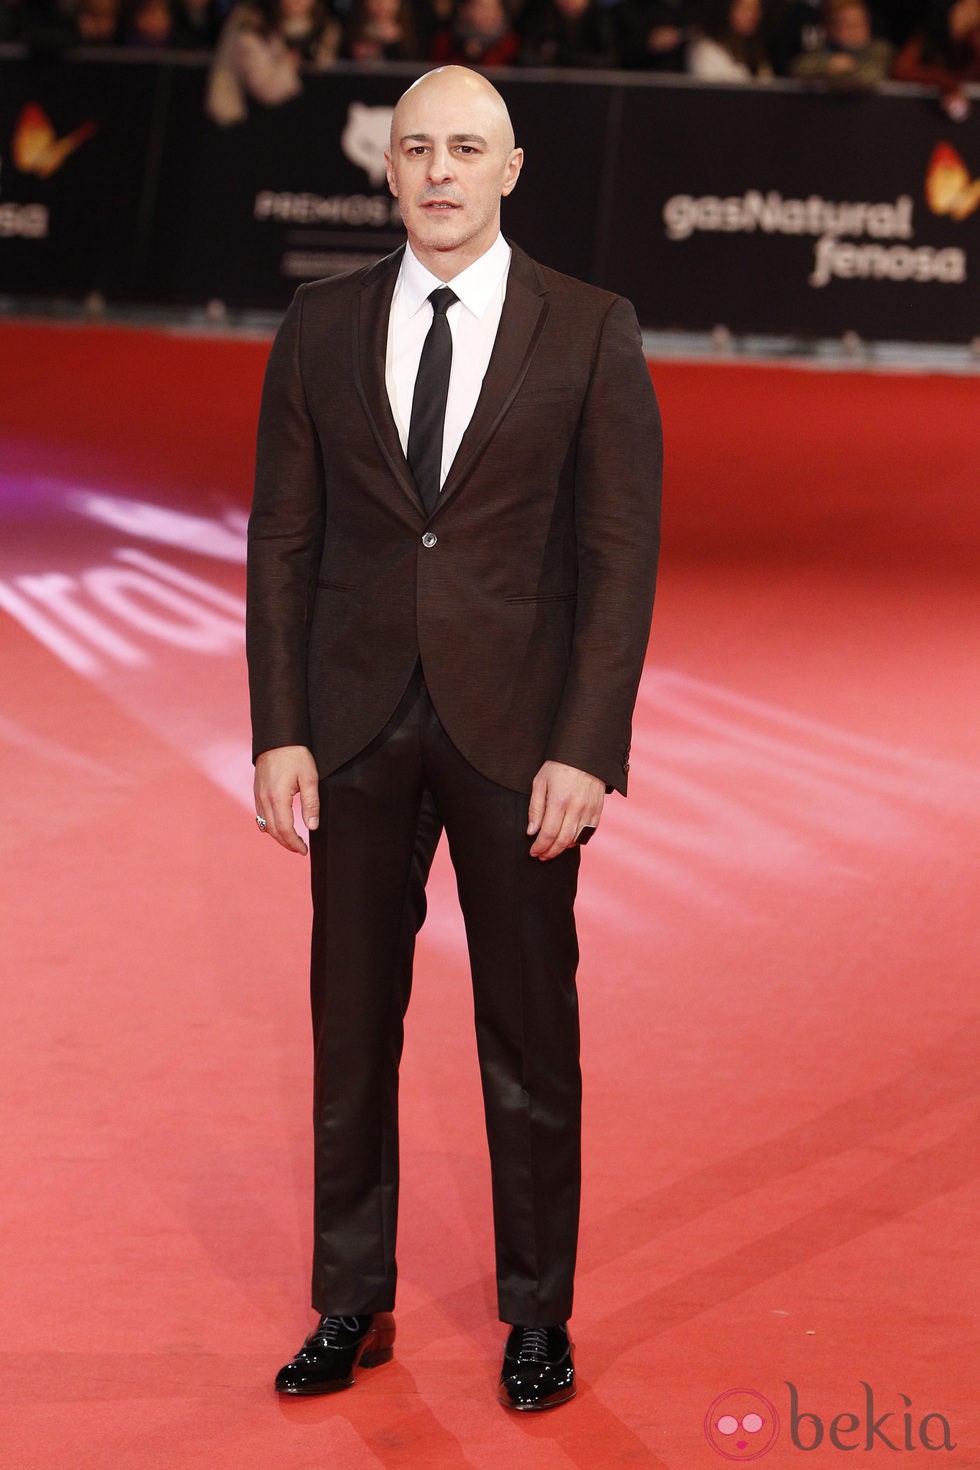 Roberto Álamo en la alfombra roja de los Premios Feroz 2014